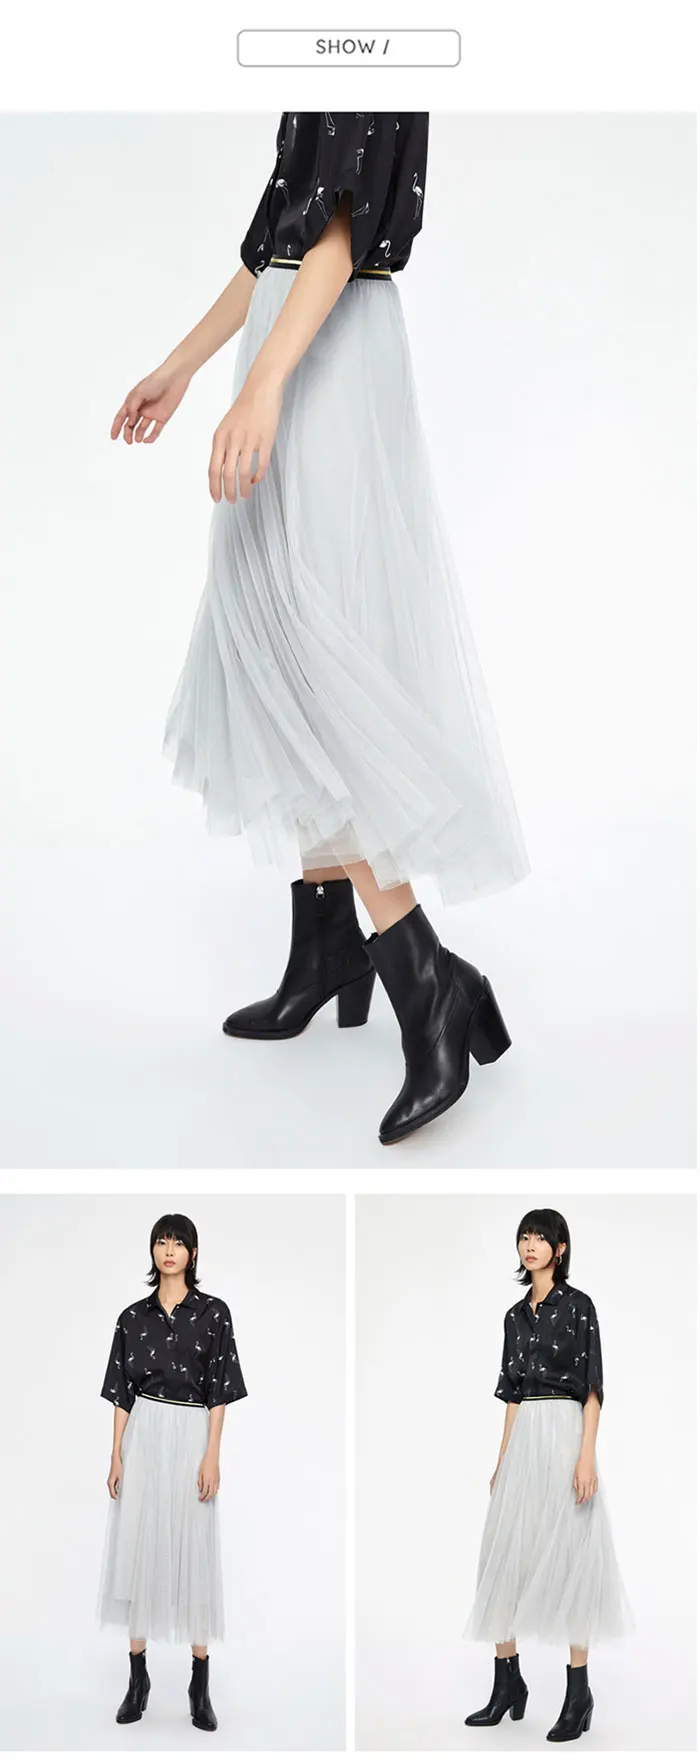 Toyouth Тюль простой плиссированный юбка Женская мода Черный Серый Белый взрослый тюль сетка эластичная высокая талия плиссированная юбка миди